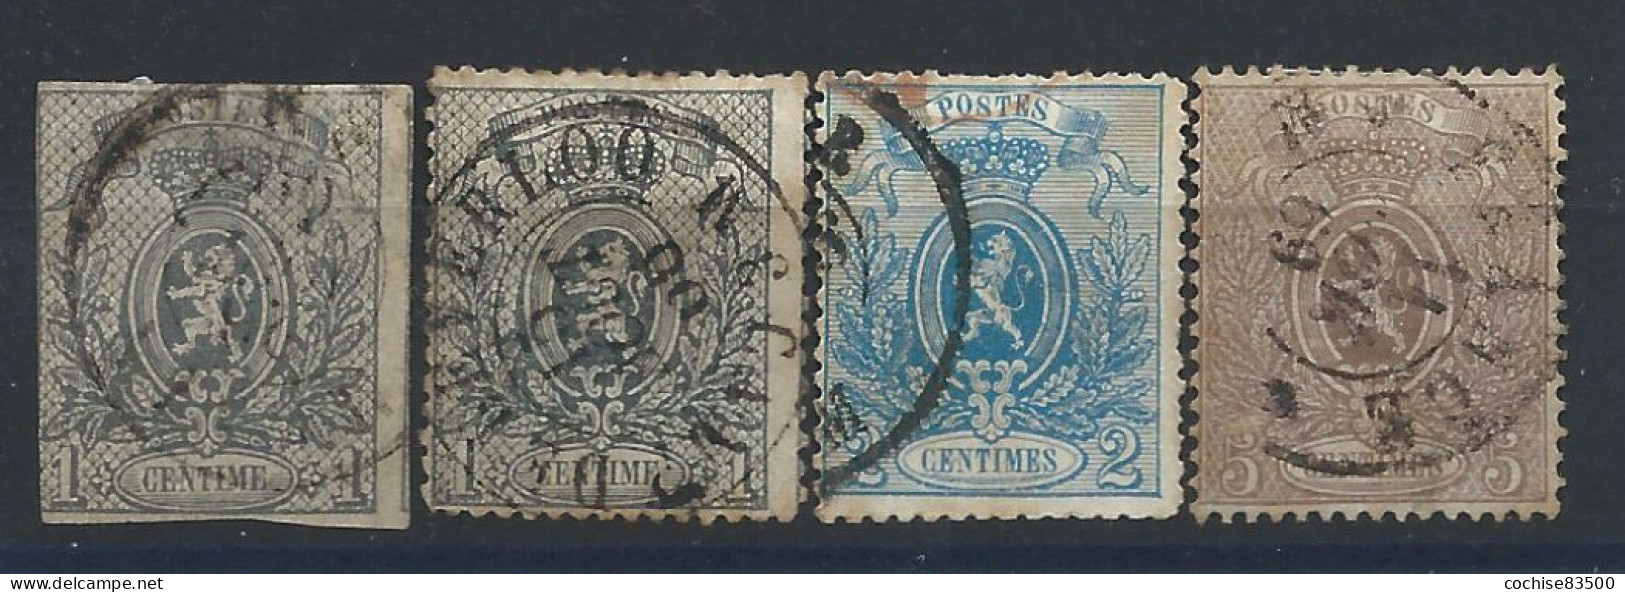 Belgique N°22/25 Obl (FU) 1866/67 - Armoiries - 1866-1867 Petit Lion